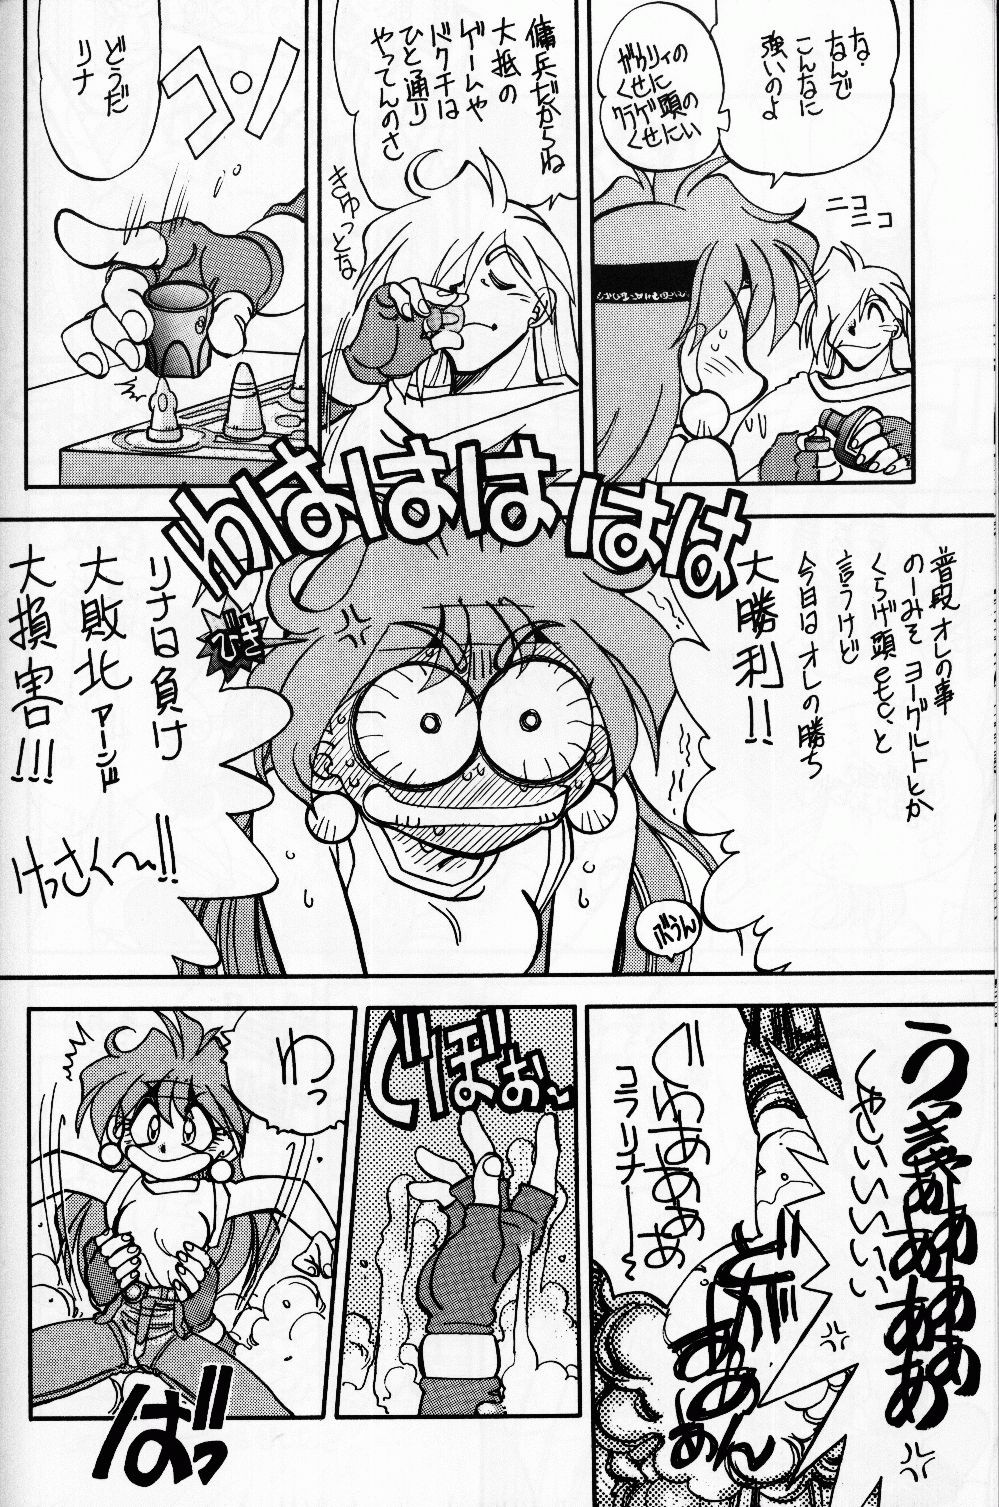 Mantou 14 hentai manga picture 5